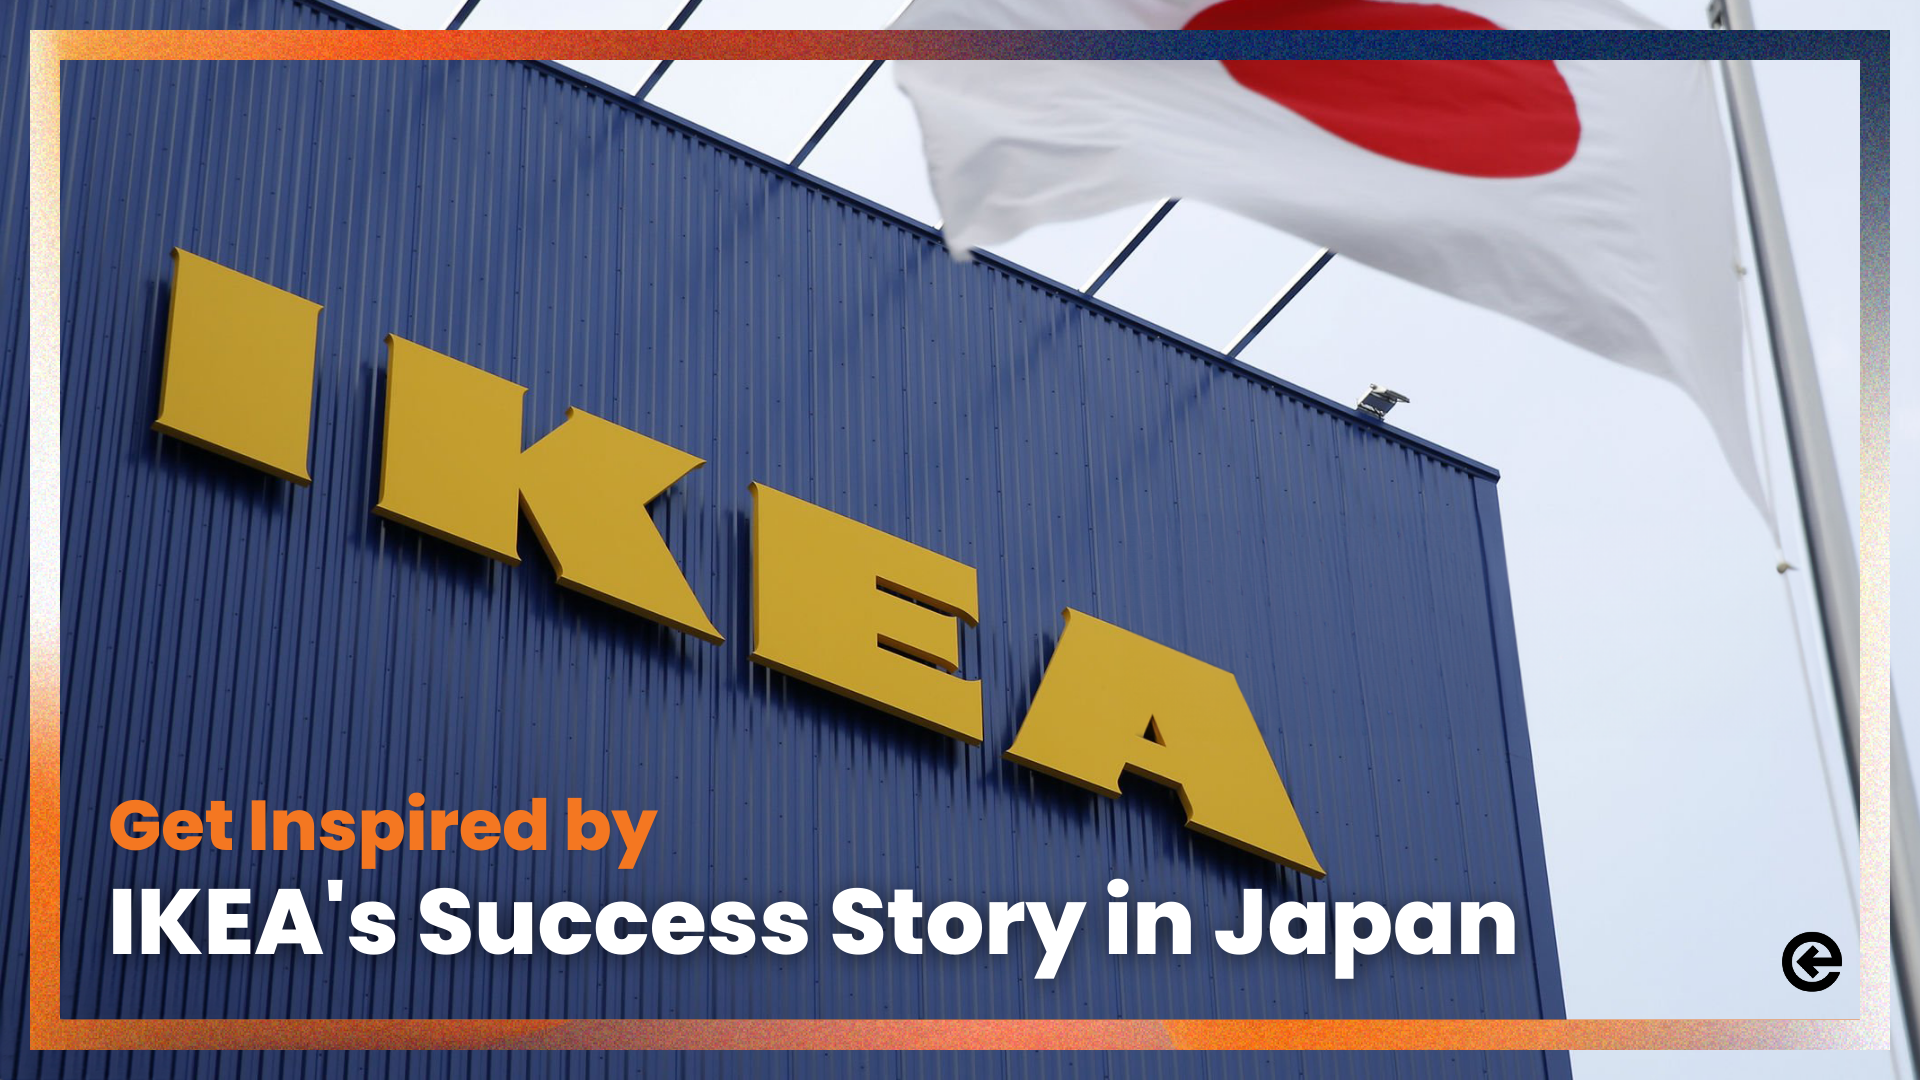 जापान में IKEA की सफलता की कहानी से प्रेरित हों